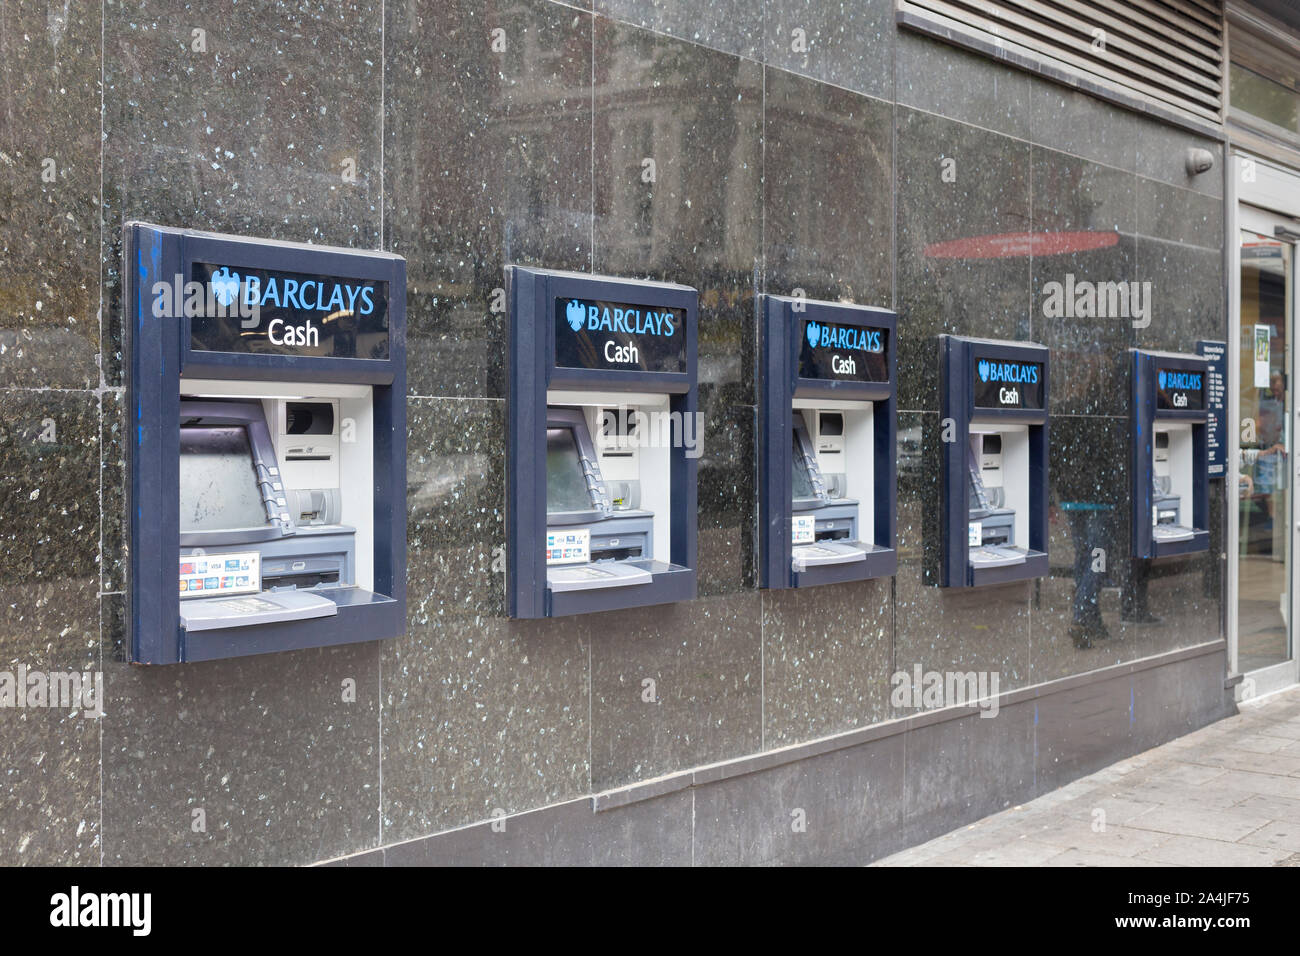 Guichets automatiques Barclays, Londres, UK Banque D'Images